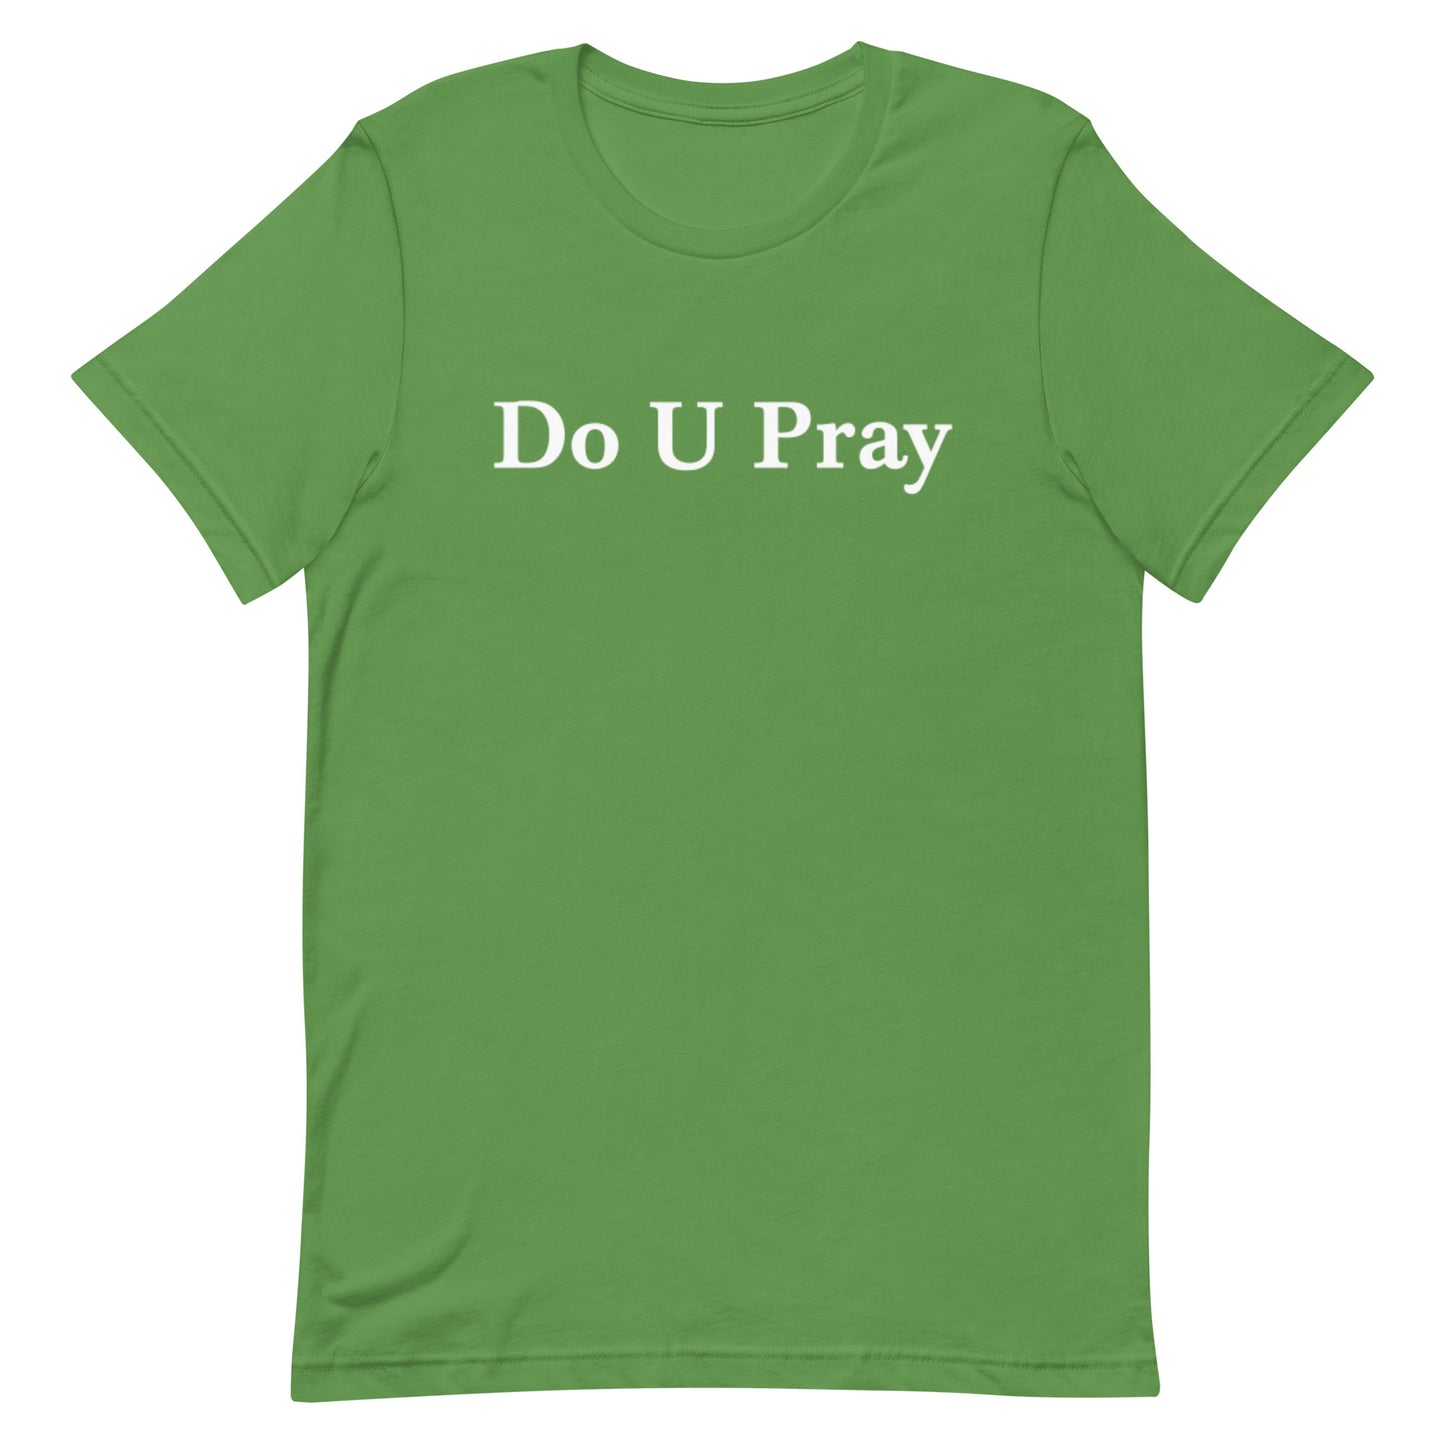 Do U Pray t-shirt